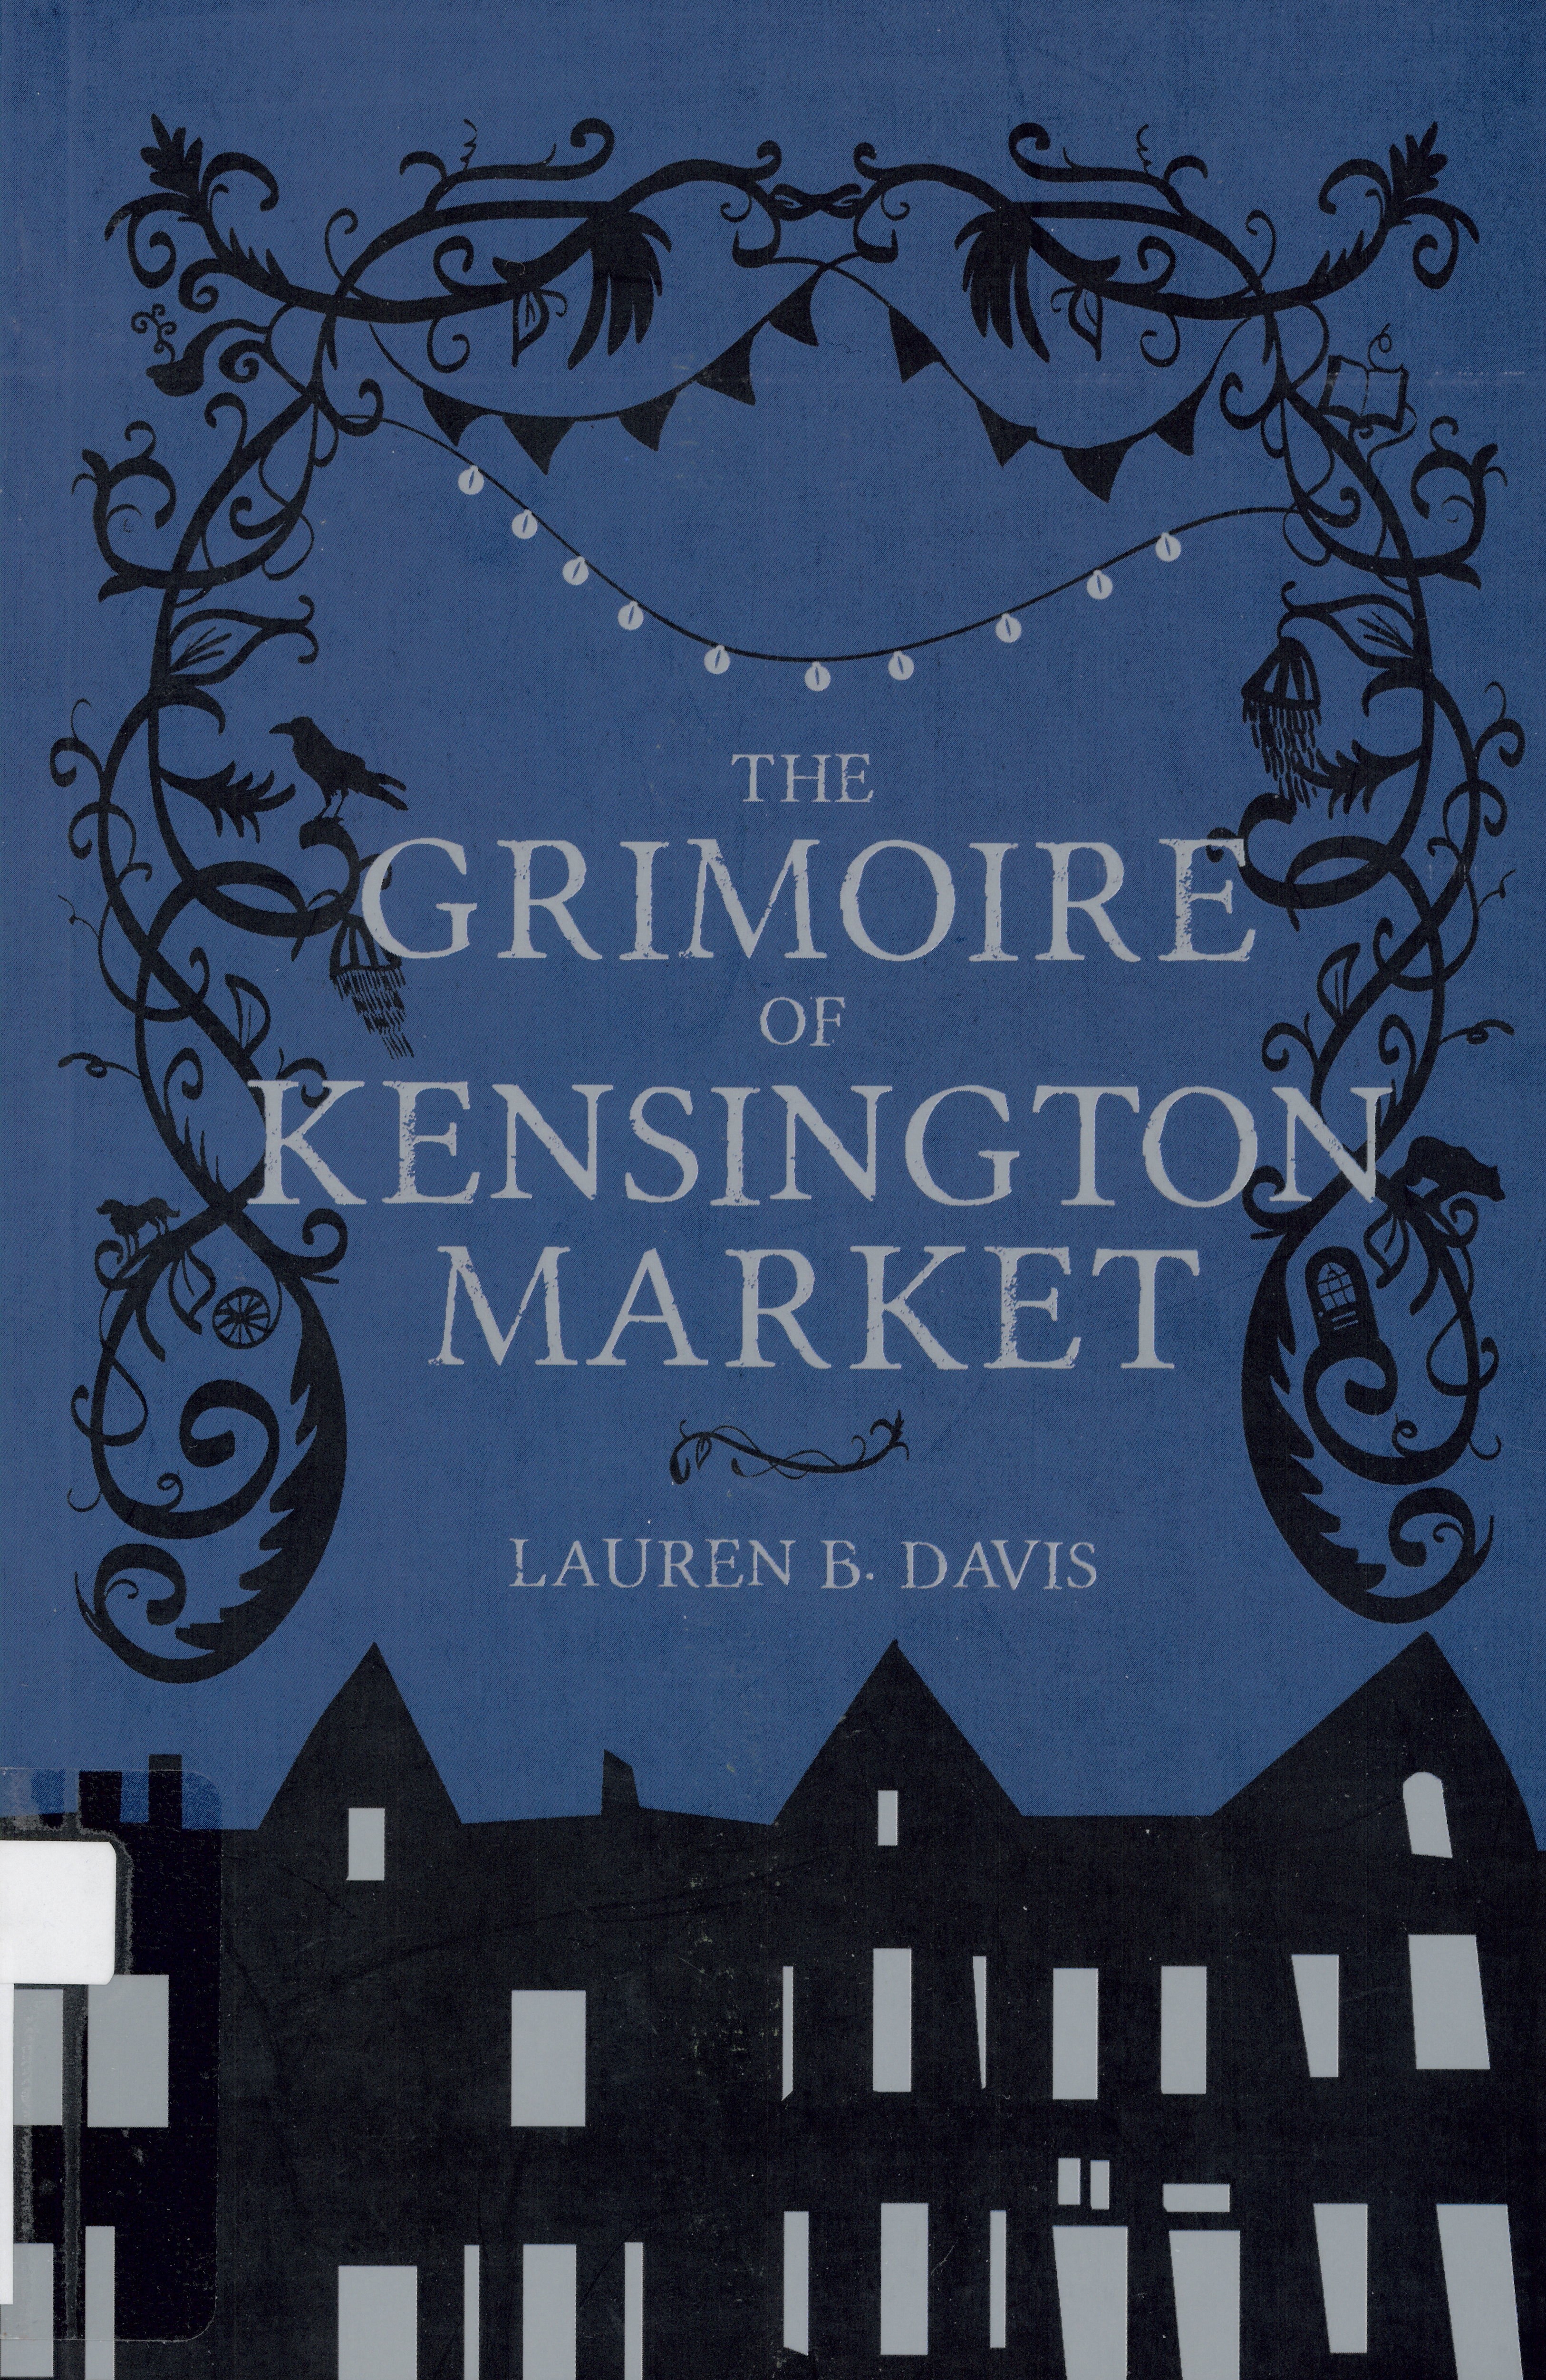 The grimoire of Kensington Market